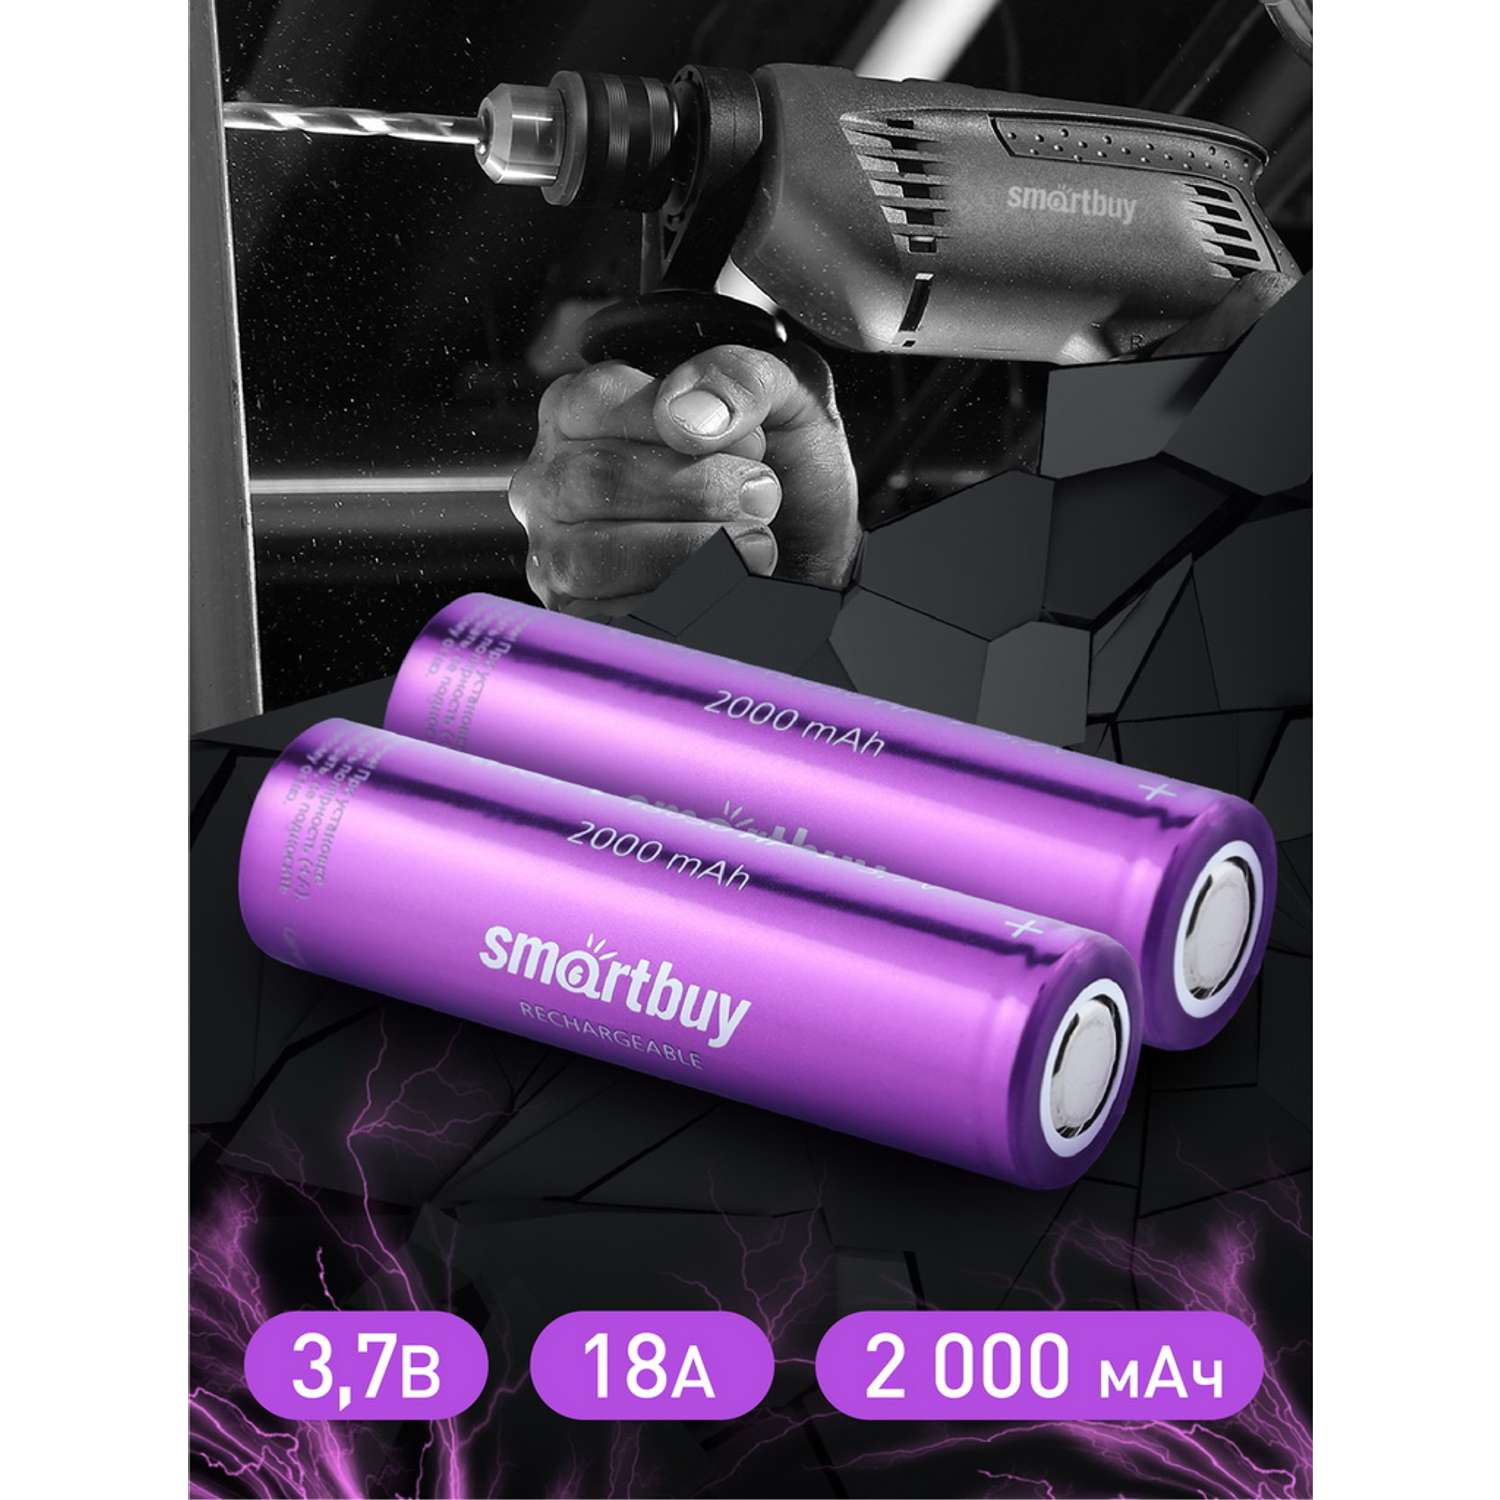 Аккумулятор высокотоковый Smartbuy 2000 mAh LI18650 - 2 шт. в упаковке - фото 6